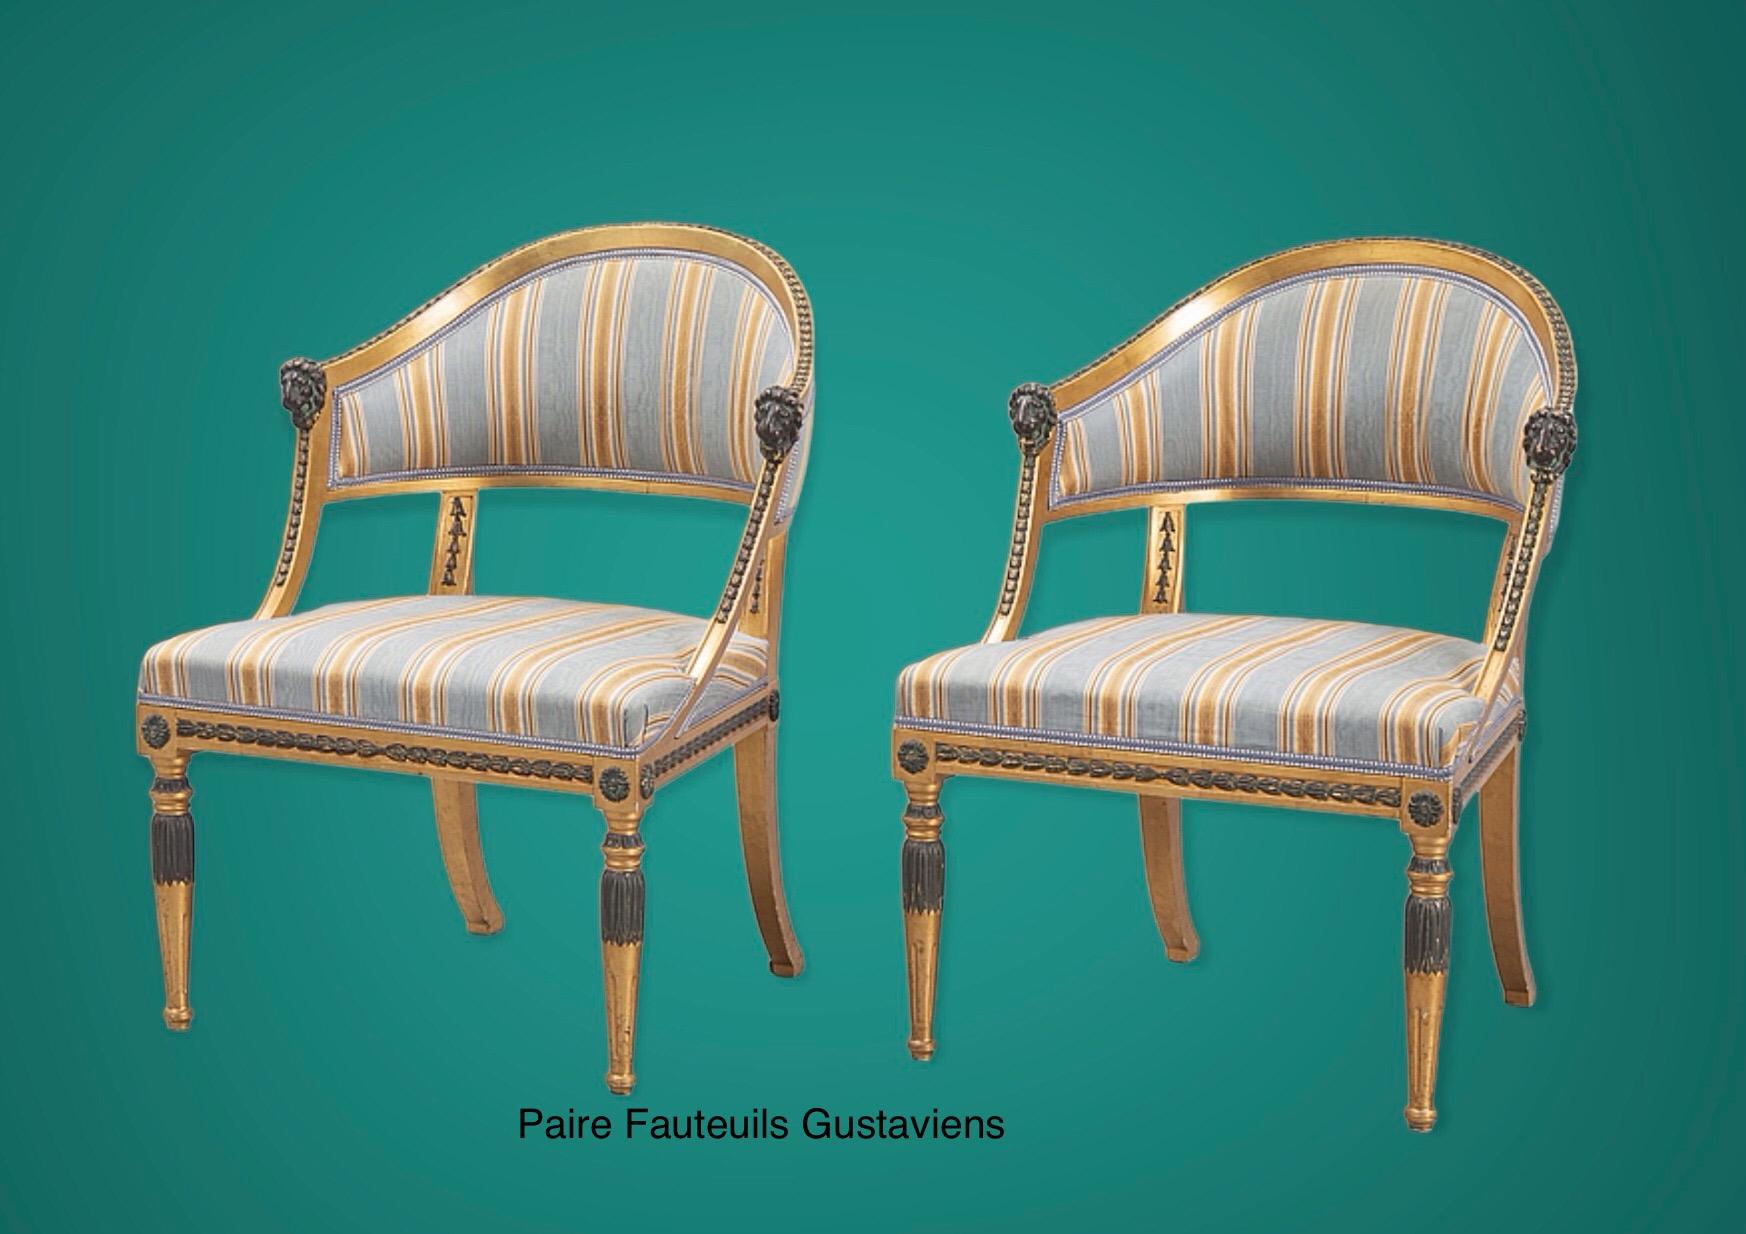 Cette paire de grands fauteuils suédois représente un sommet en matière d'élégance et de confort. 
La forme néoclassique légère avec un dos demi-rond généreusement orienté vers l'arrière donne le genre de sensation de confort que l'on trouve dans